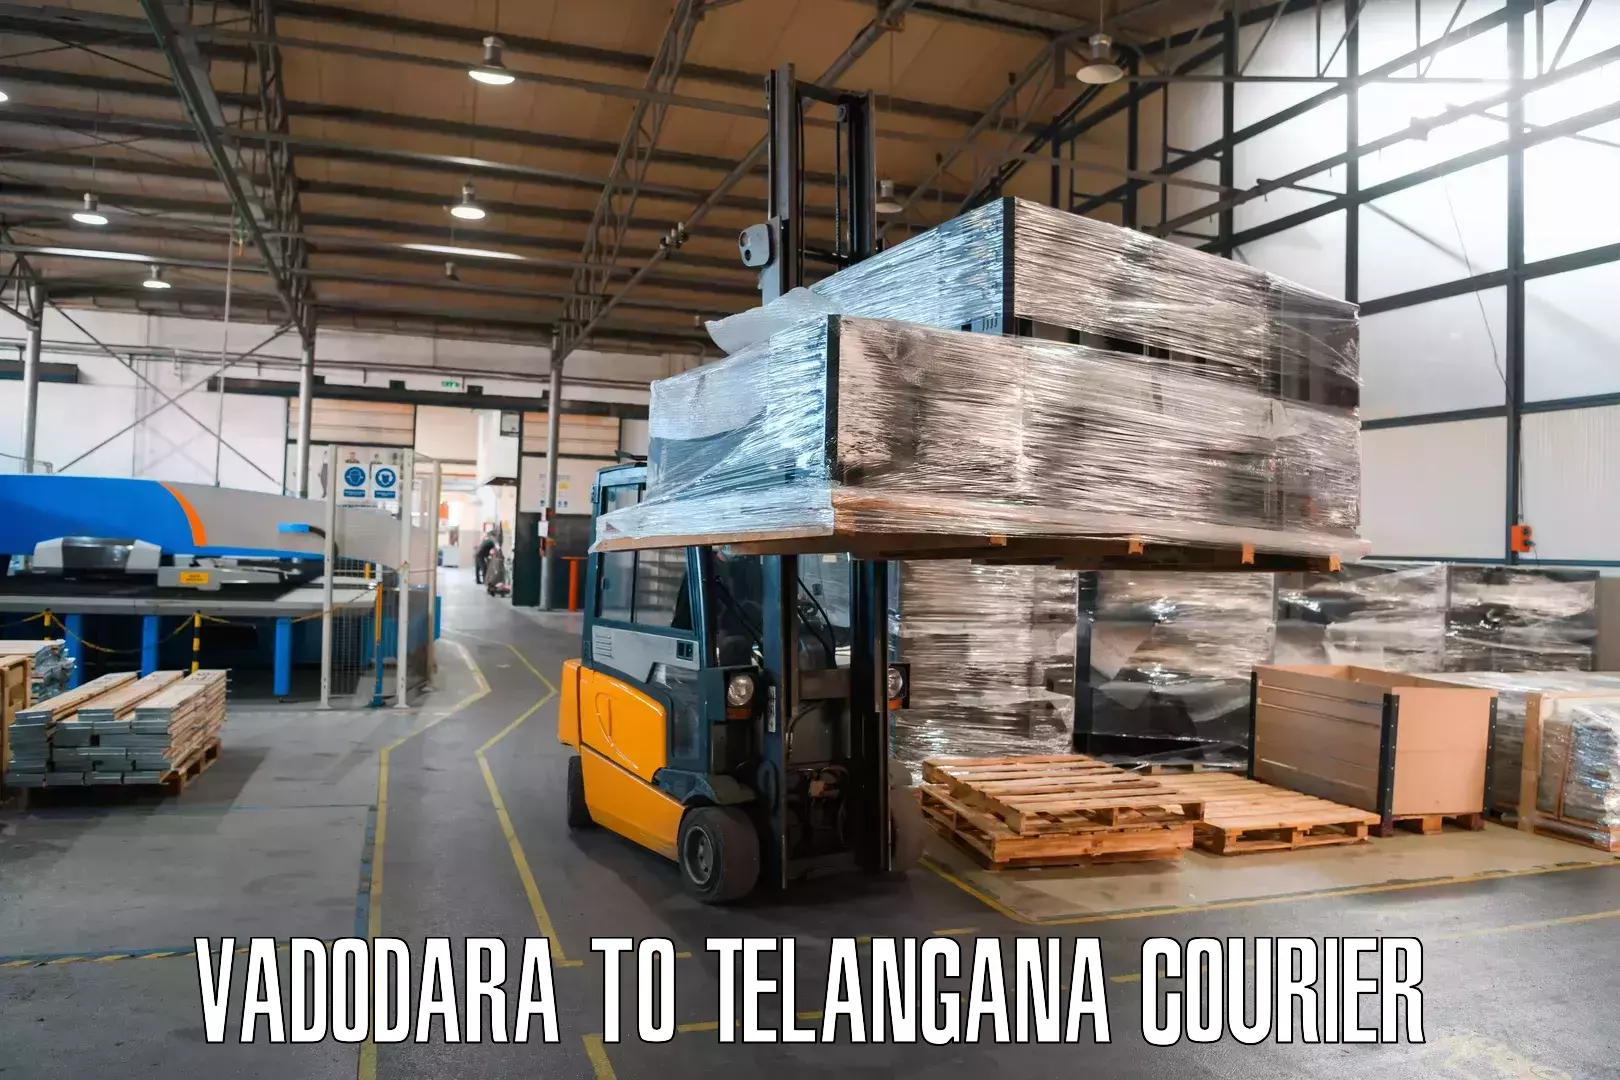 Express delivery network Vadodara to Telangana